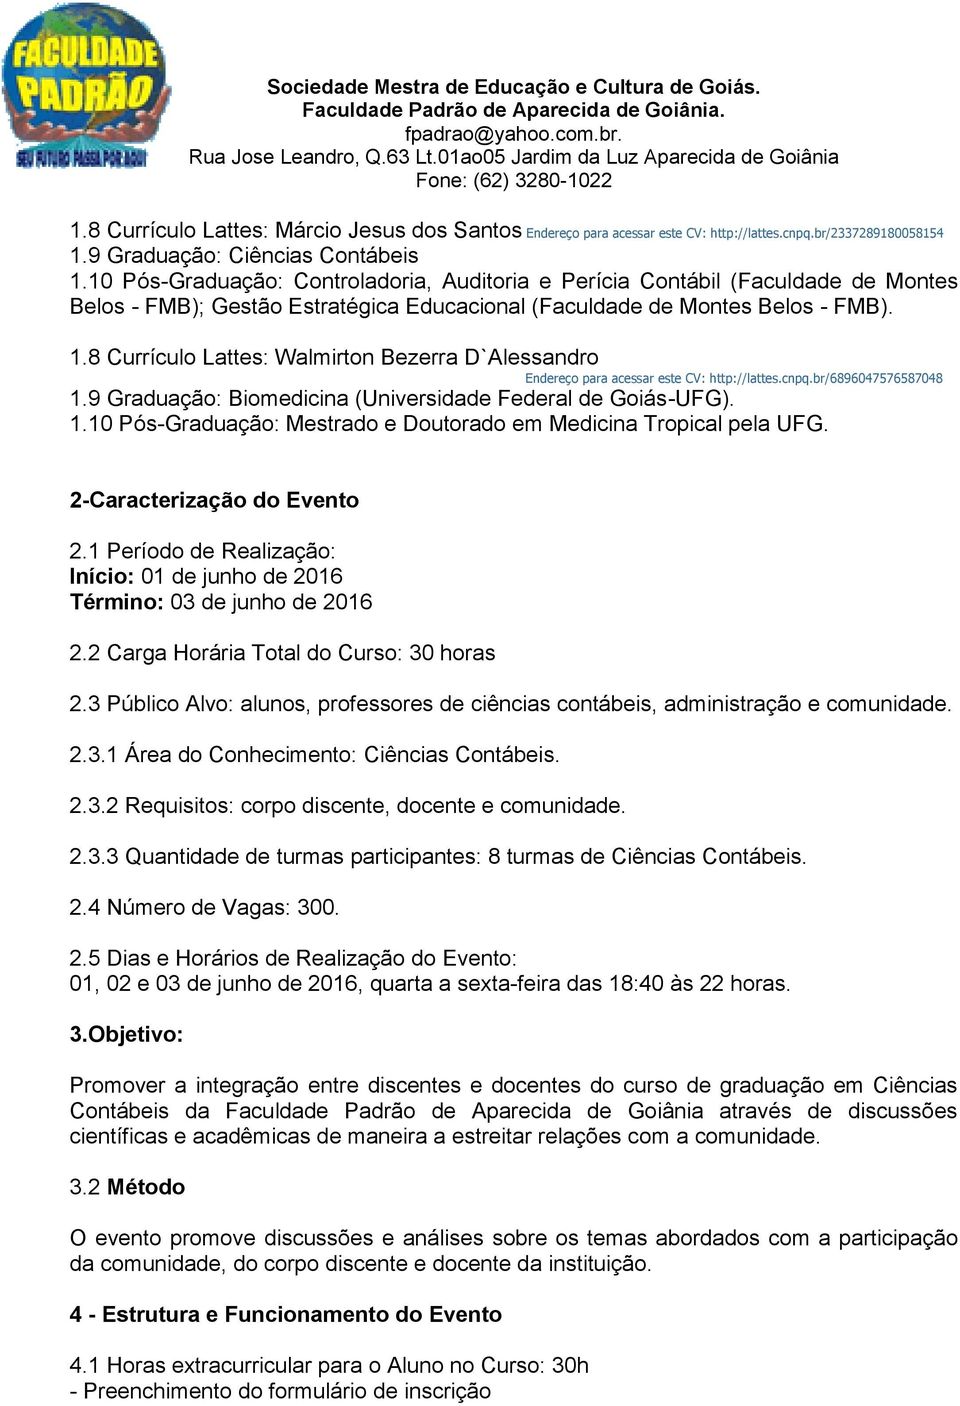 8 Currículo Lattes: Walmirton Bezerra D`Alessandro Endereço para acessar este CV: http://lattes.cnpq.br/6896047576587048 1.9 Graduação: Biomedicina (Universidade Federal de Goiás-UFG). 1.10 Pós-Graduação: Mestrado e Doutorado em Medicina Tropical pela UFG.